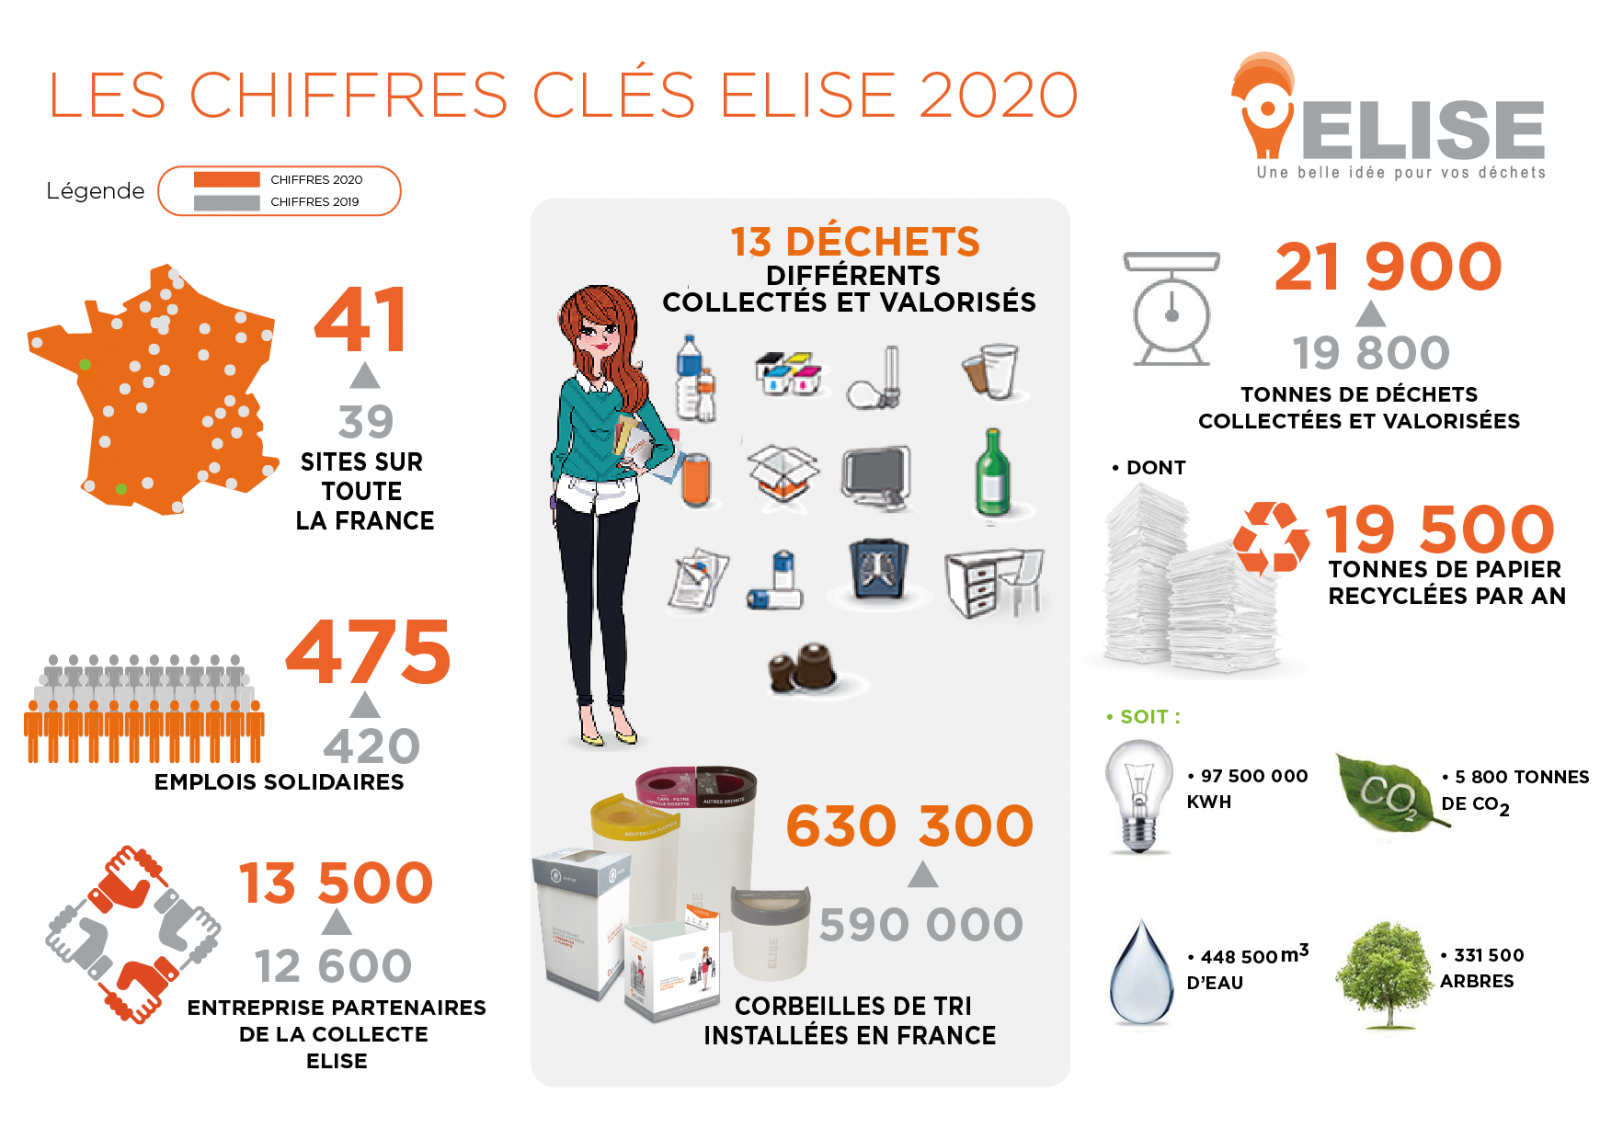 Le chiffres clés: en 2020,il y a deux sites de recyclage en France qu'en 2019. 13 déchets differents sont collectés et valorisés. En 2019, il y avait 590000 corbeilles de tri installés en France alors qu'il y en a 630300 en 2020, il y avait 19800 tonnes de déchets collectés en France, en 2019, alors qu'il y en a 21900 en 2020. recyclage